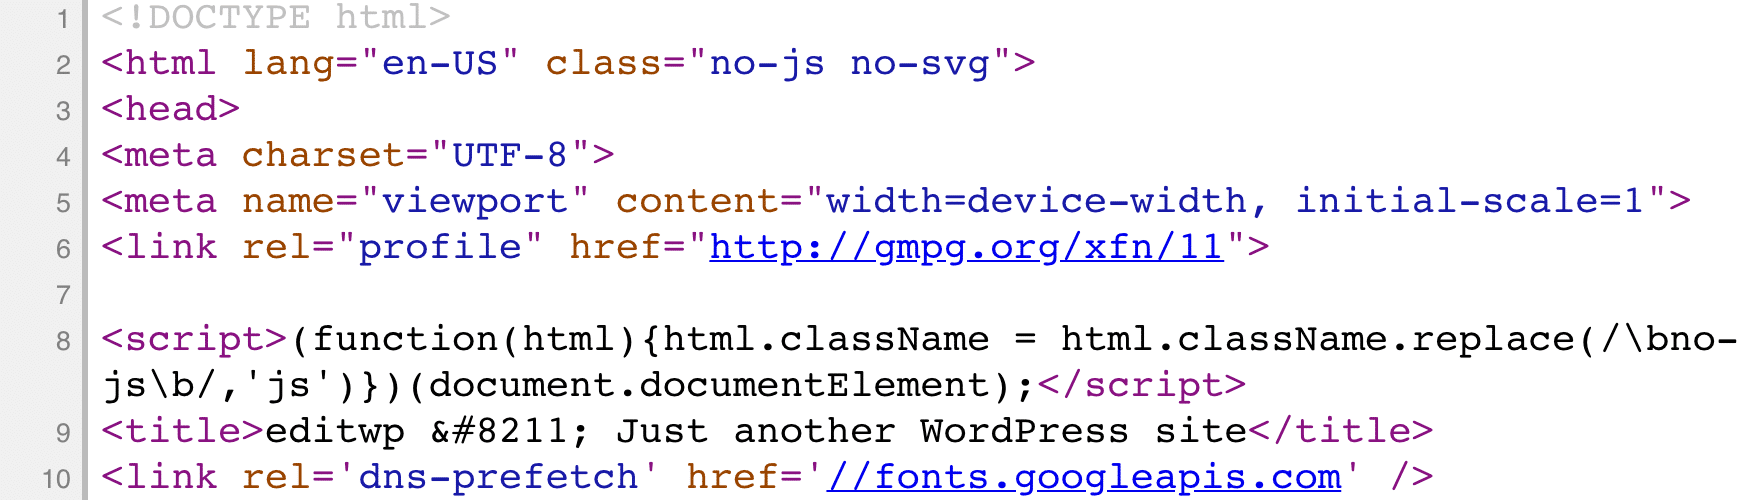 Ikke-minificeret HTML-kode